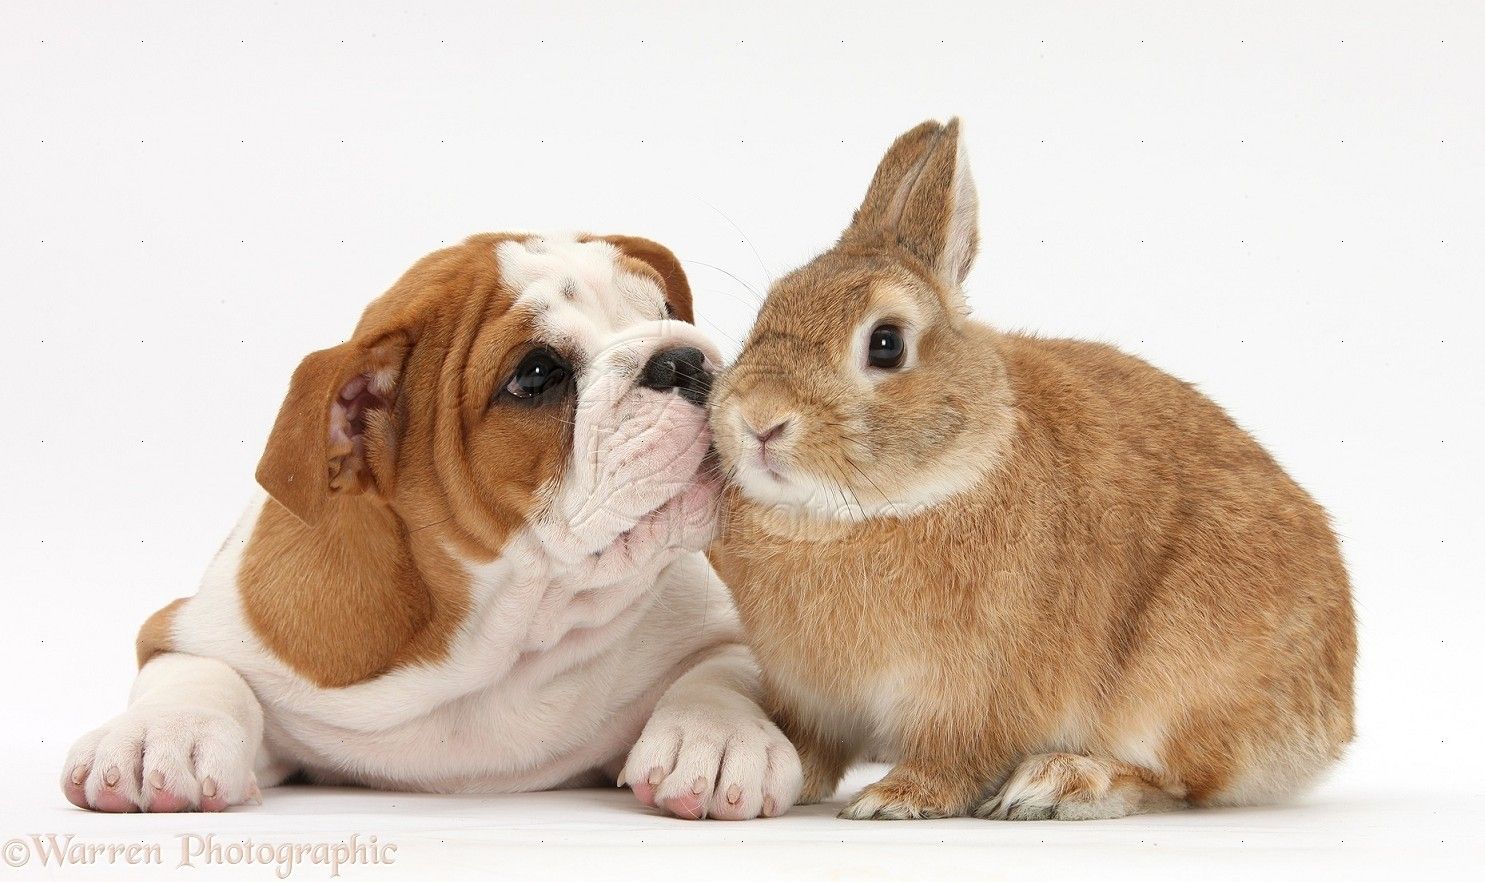 34286-Bulldog-pup-and-rabbit-white-background.jpg